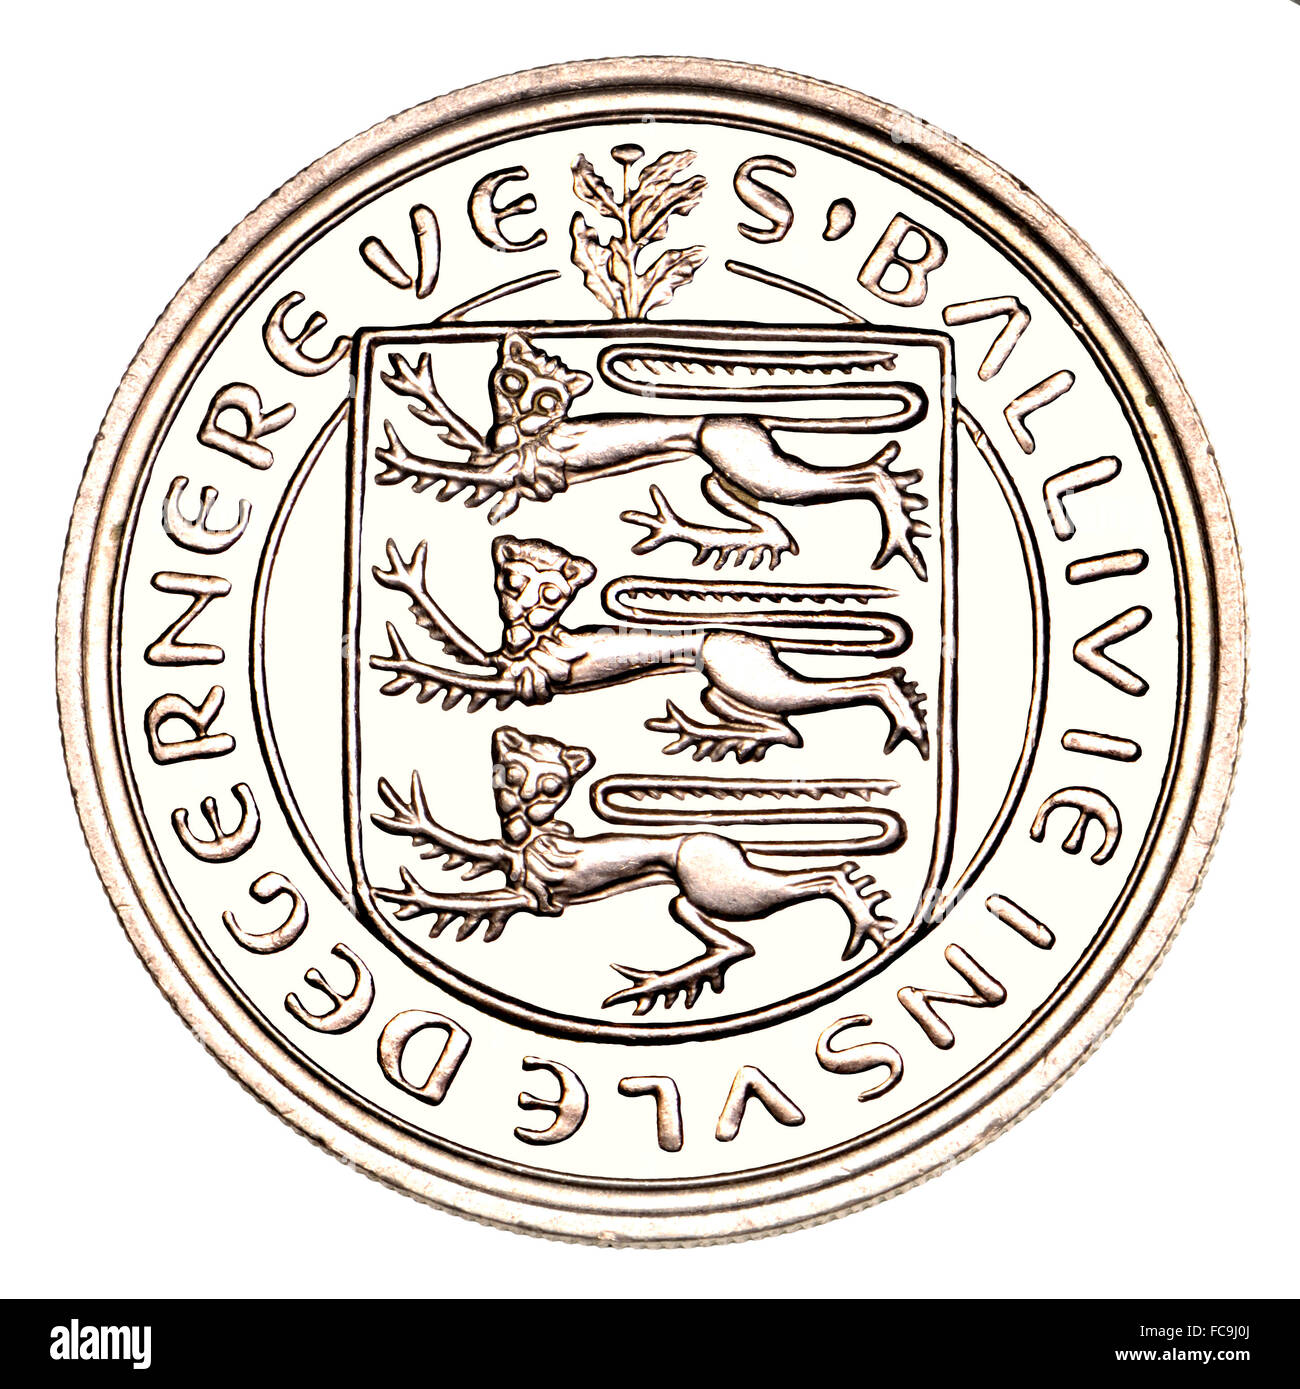 Guernsey-Münze - 10 neue Pence, 1968, umgekehrt zeigt das Wappen (Hintergrund Digital bereinigt) Stockfoto